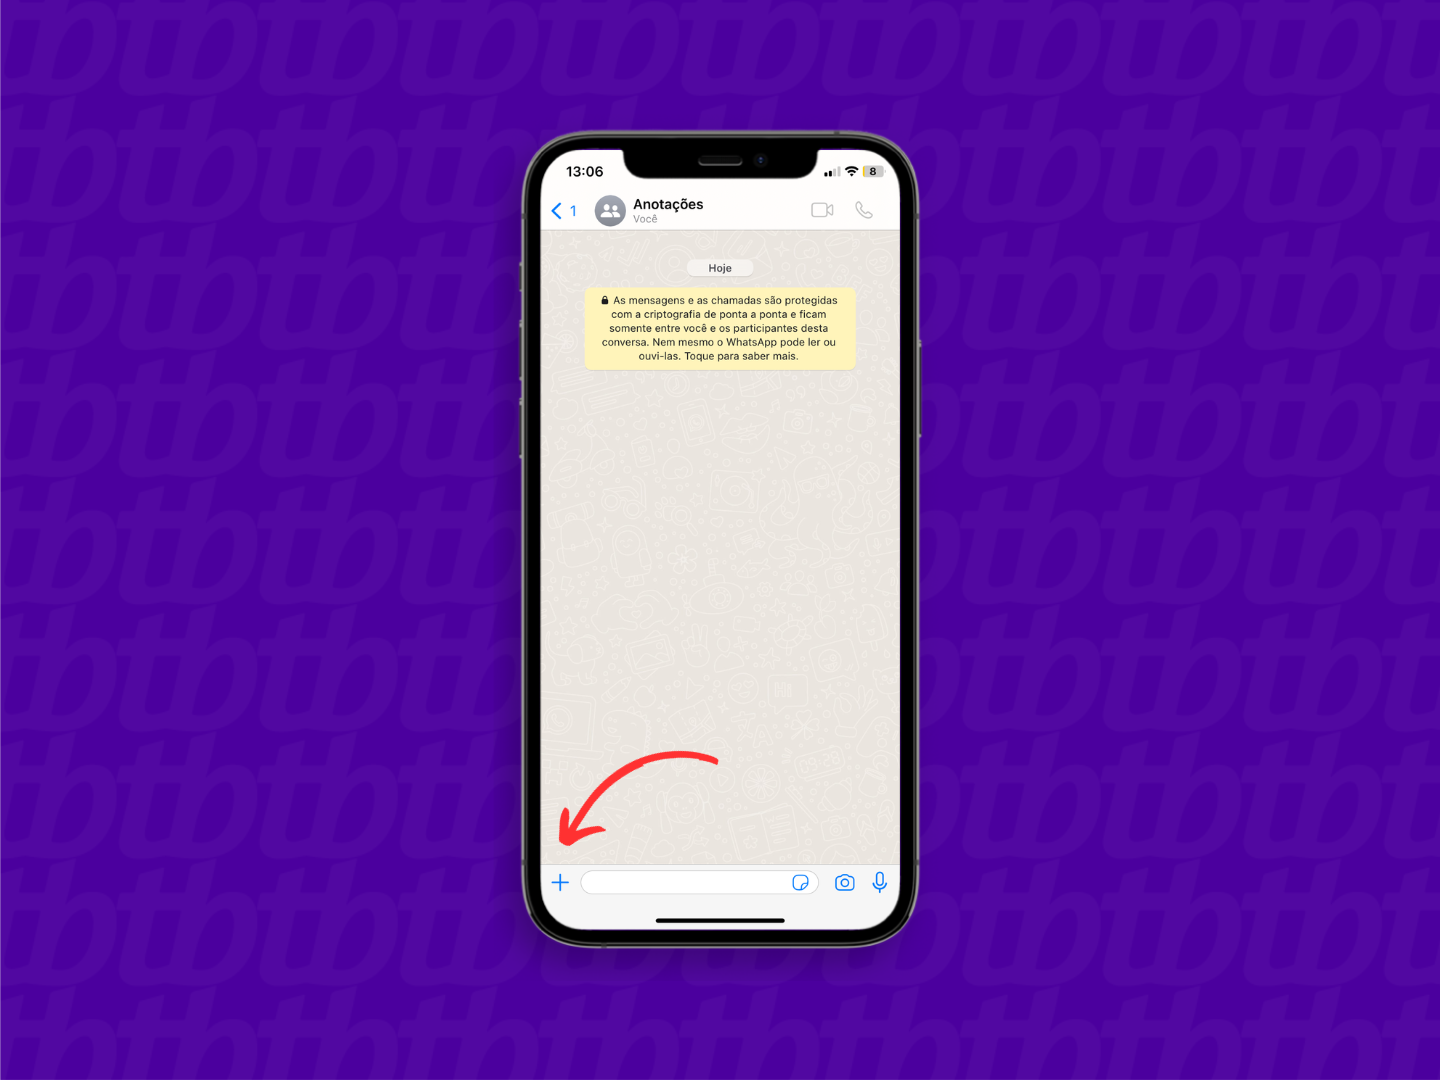 Mockup de iPhone com print de conversa do WhatsApp. Uma seta indica o botão "+", localizado no canto inferior esquerda da tela.